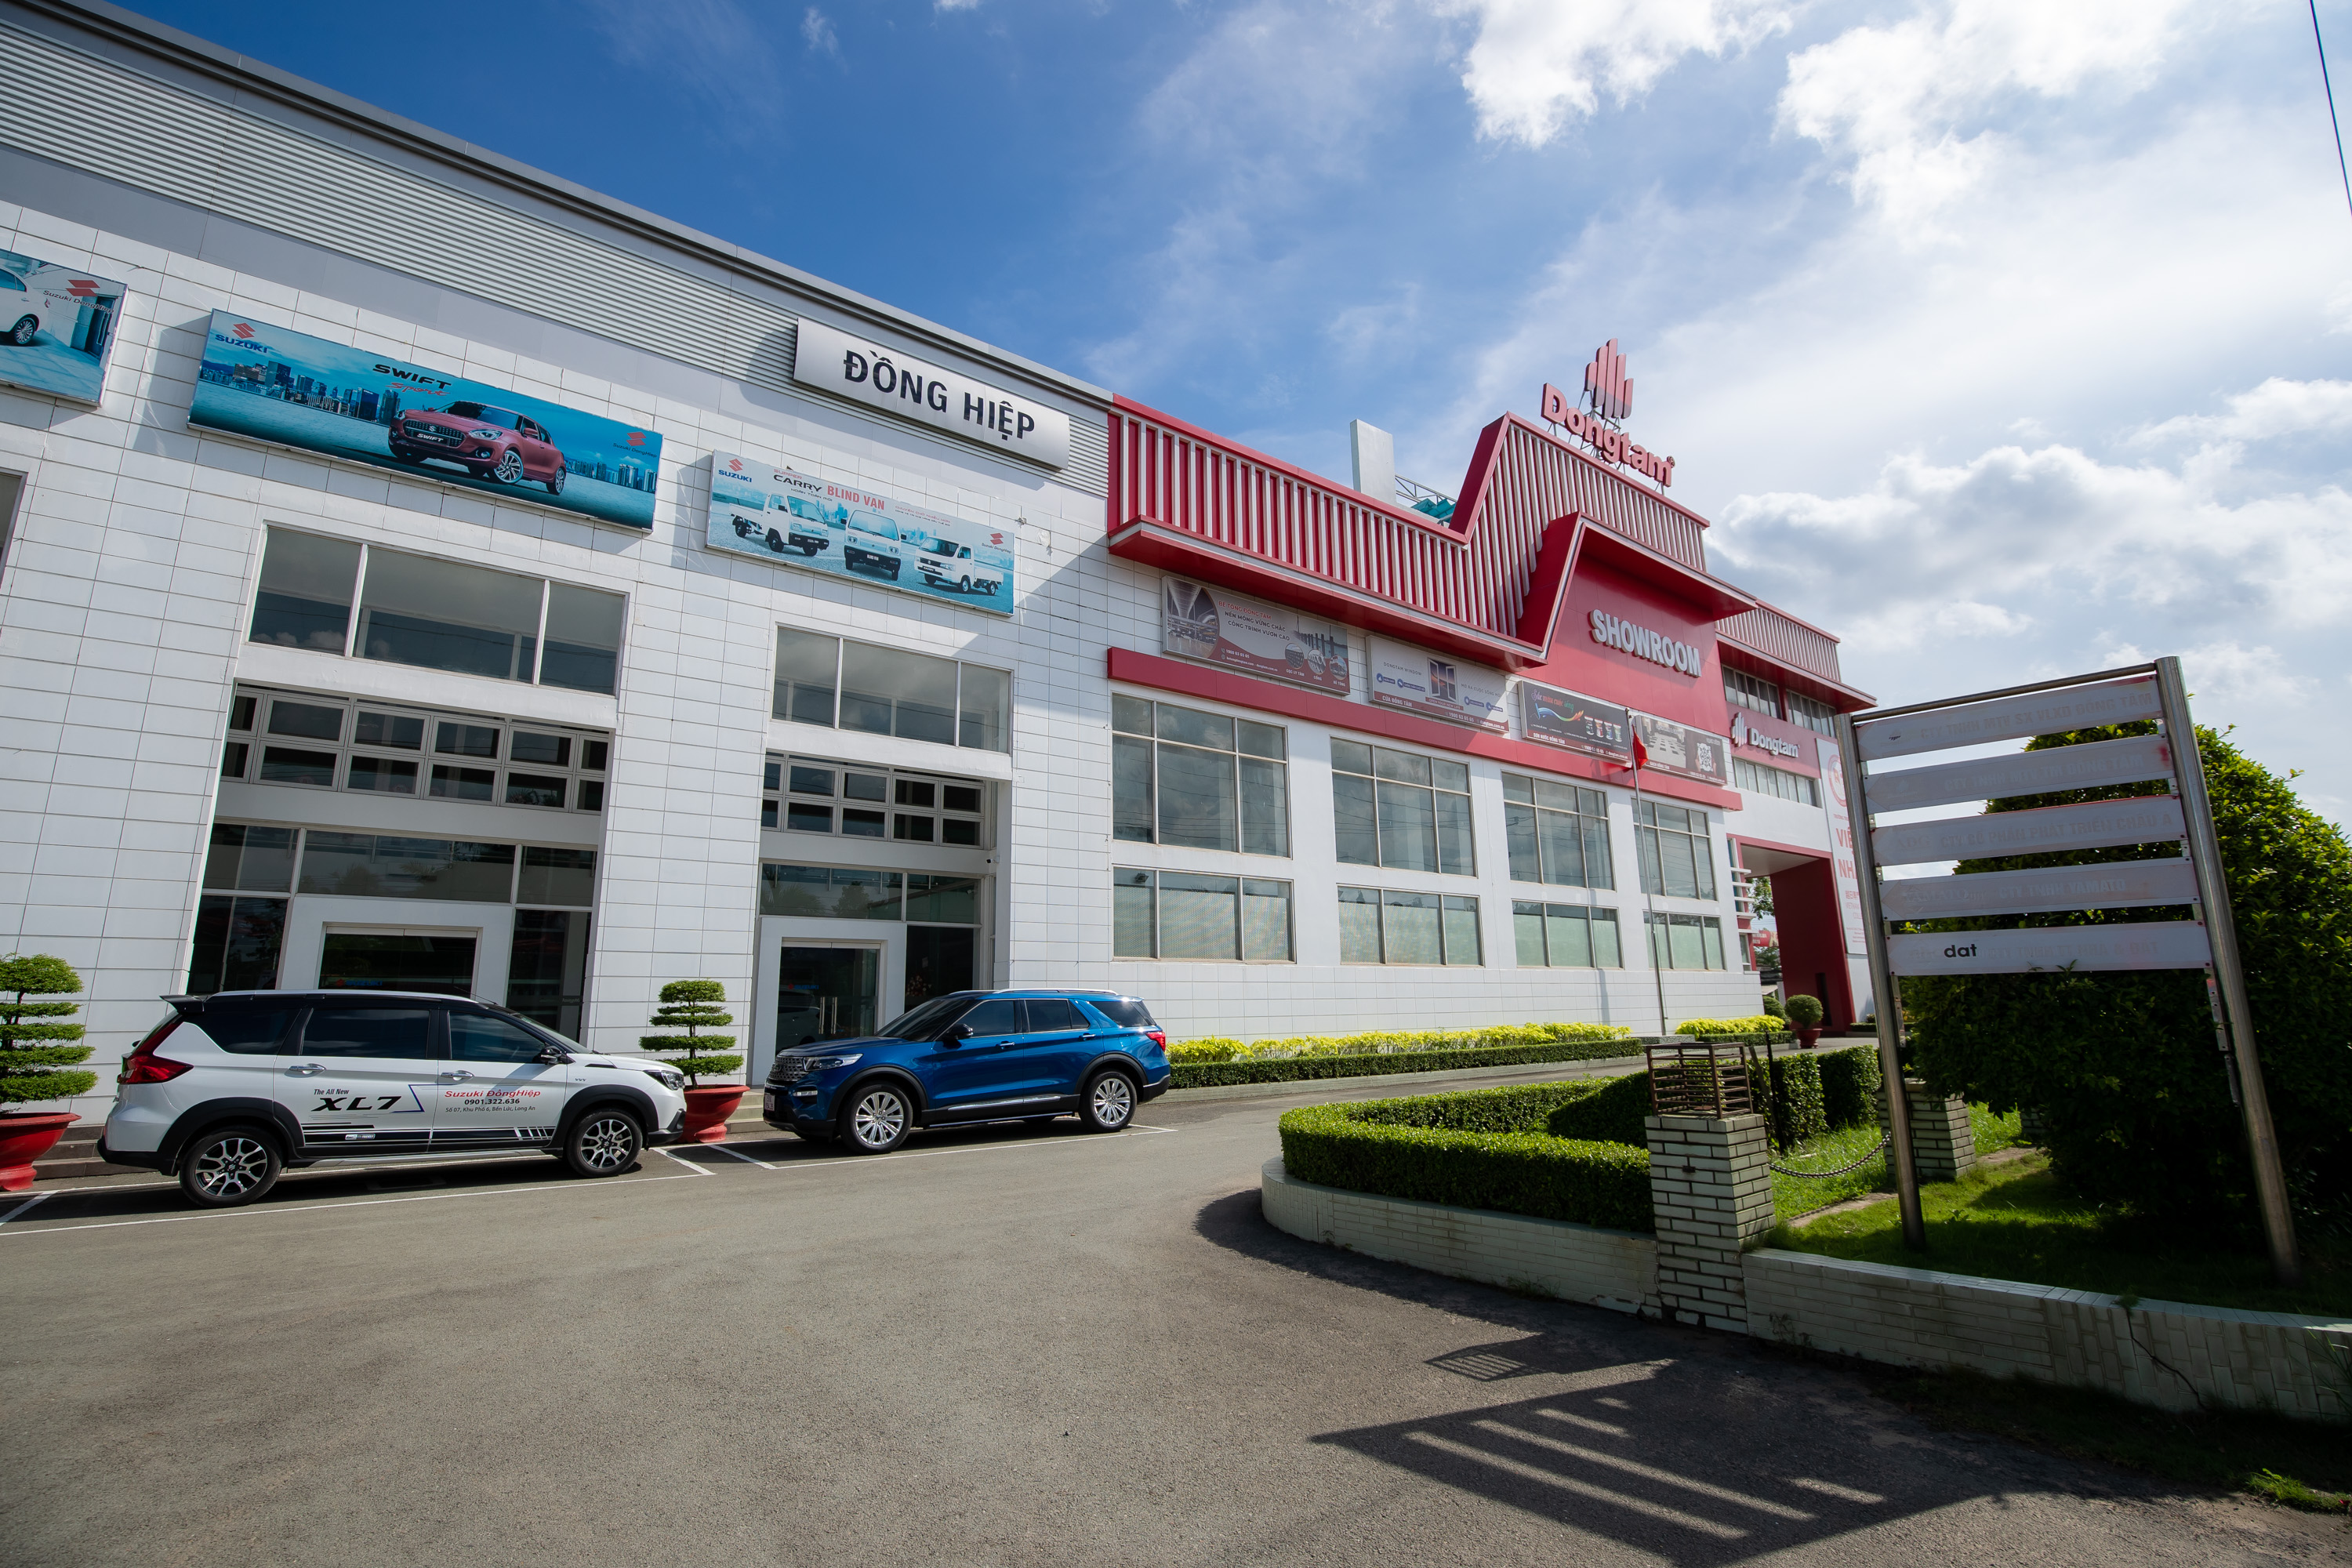 Suzuki Đồng Hiệp - Đại lý ủy quyền chính thức đạt chuẩn 3S của Suzuki chính thức  khai trương